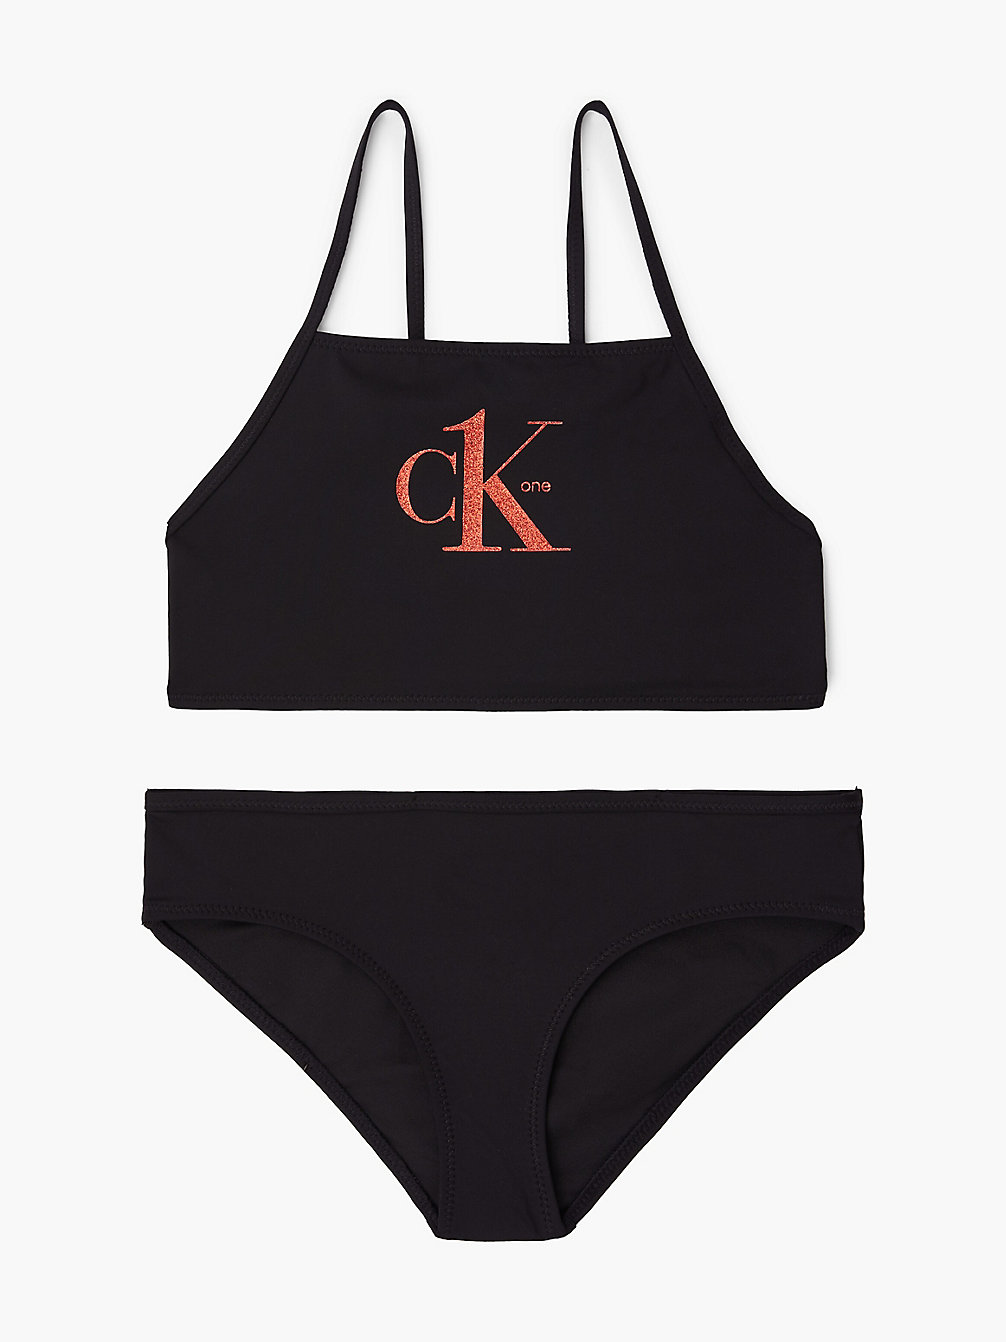 PVH BLACK Girls Bralette Bikini Set - Y2ck One undefined girls Calvin Klein